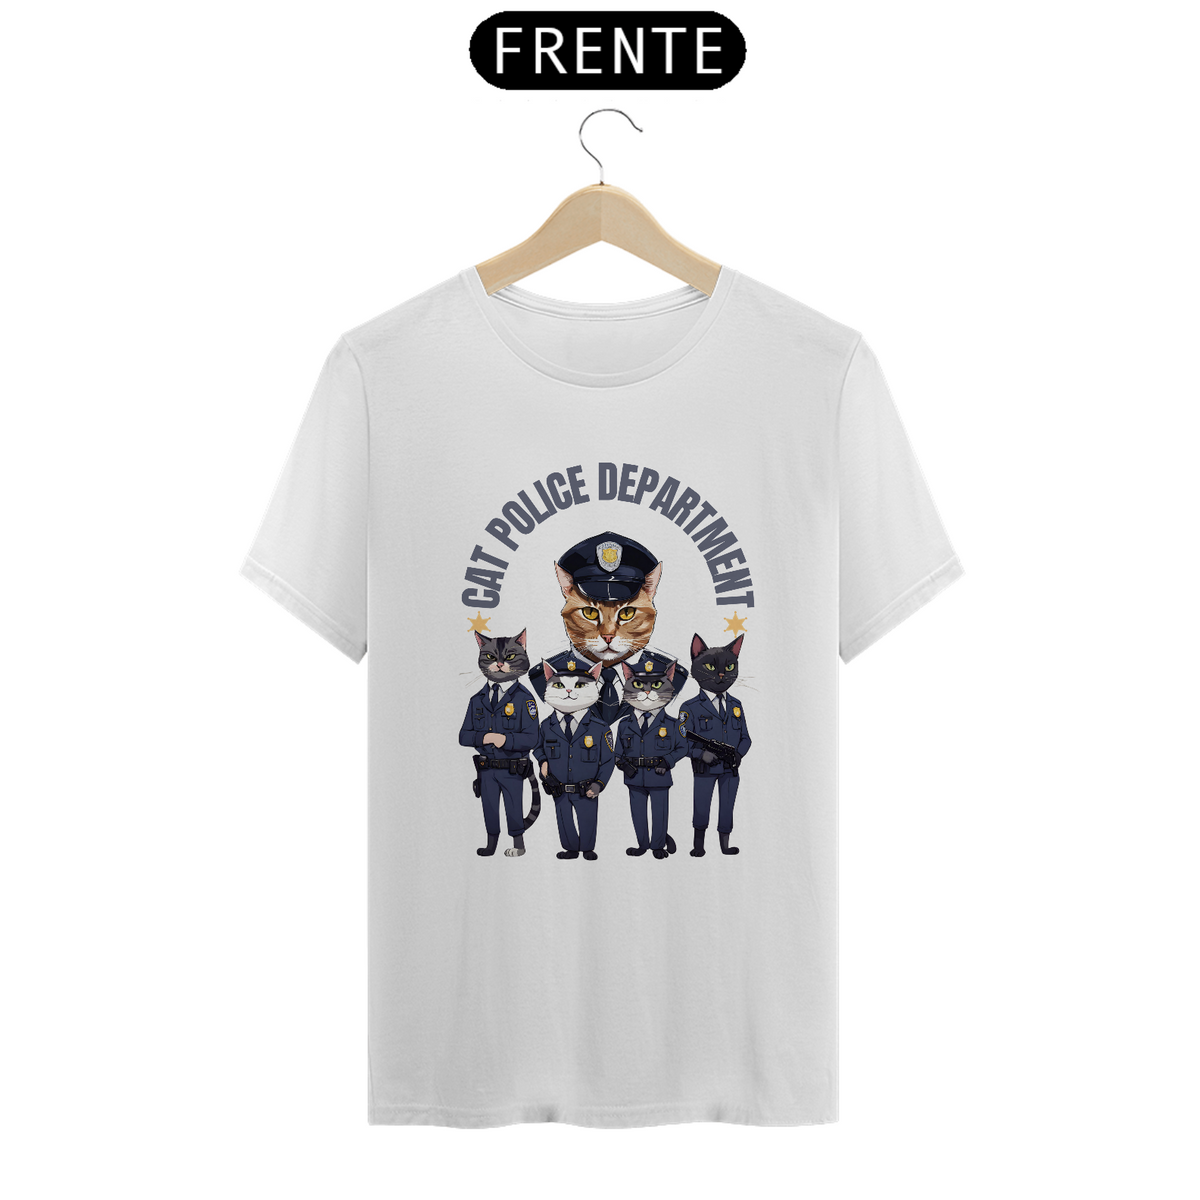 Nome do produto: Camiseta - Cat Police Department